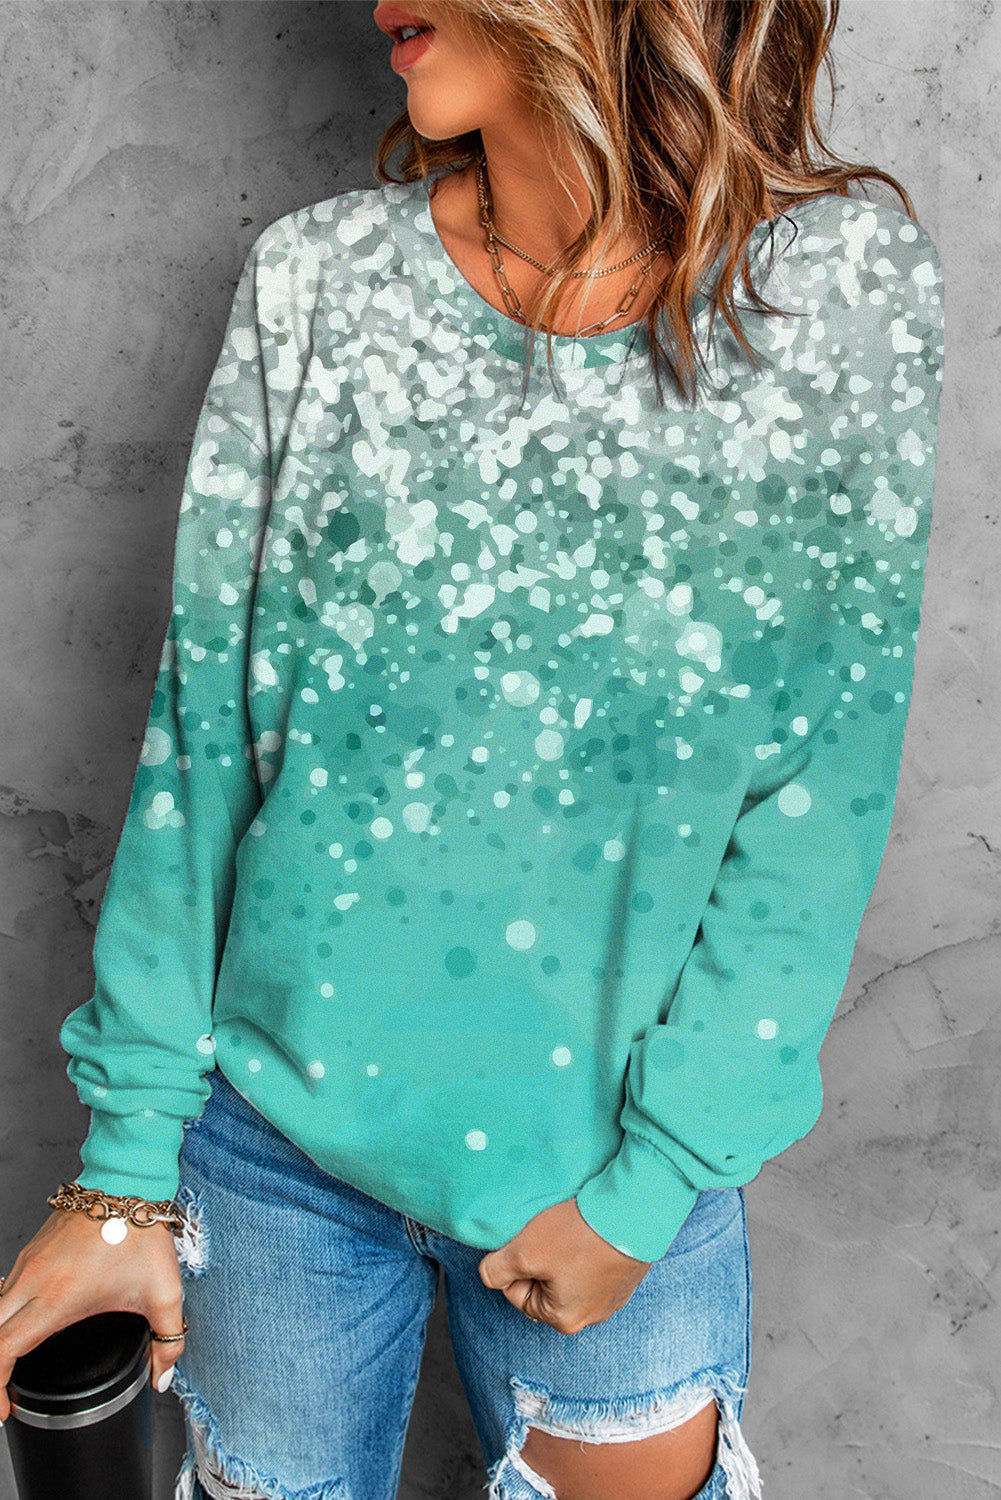 Sky Blue Bleached Splatter Gradient Long Sleeve Sweatshirt Item NO.: 6863